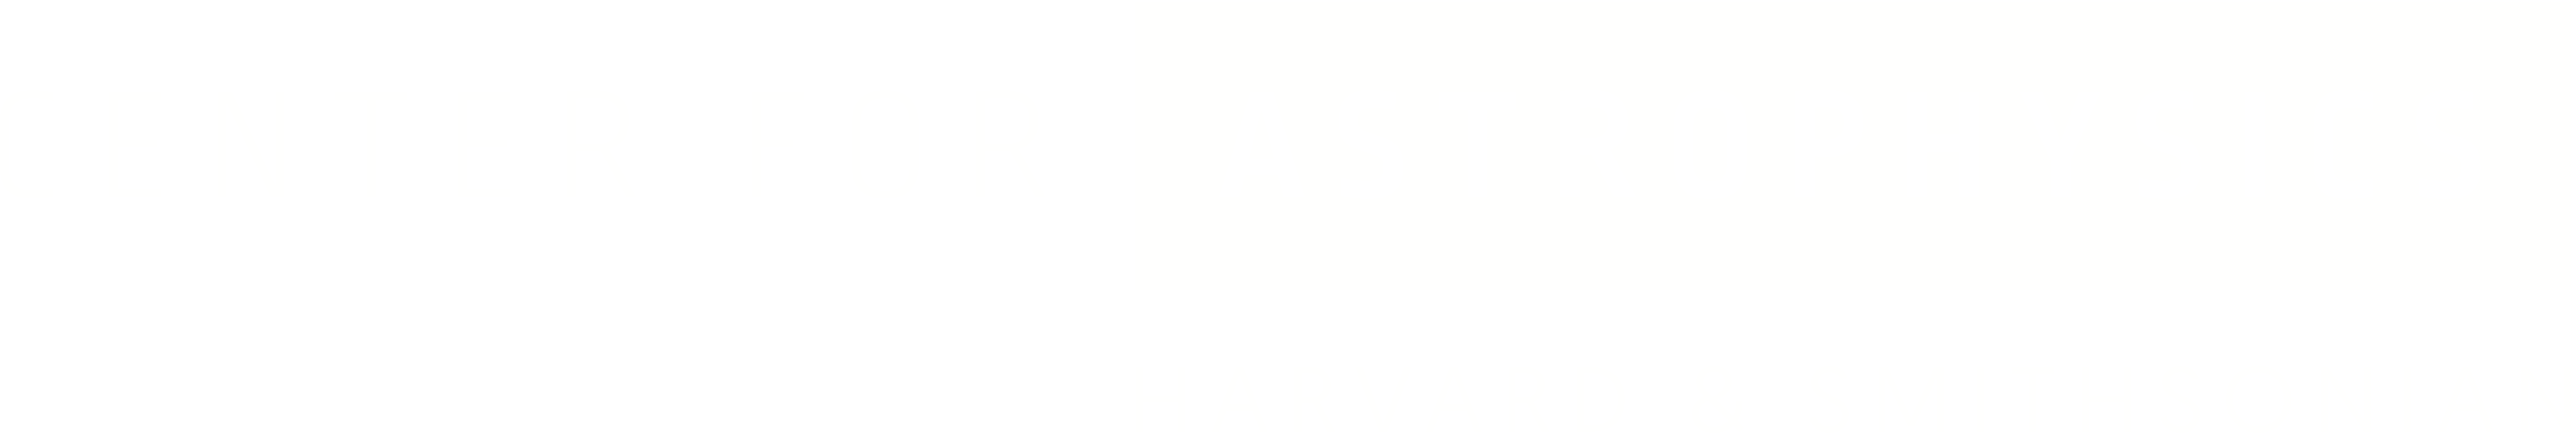 Center for Astrophysics logo